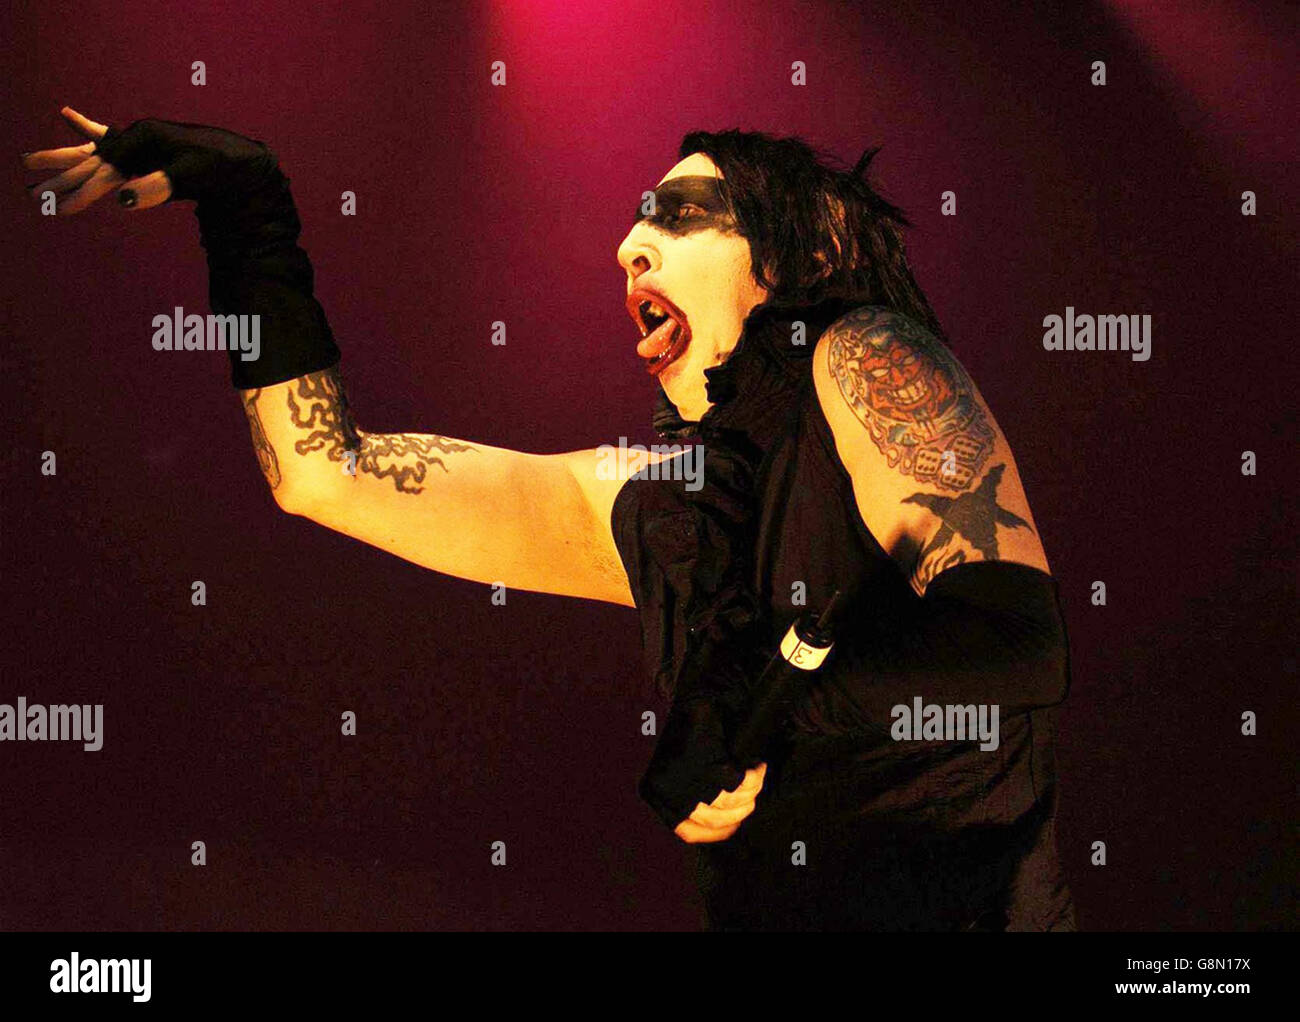 Marilyn Manson beim Reading Festival. Marilyn Manson spielt auf der Hauptbühne beim Reading Festival. Stockfoto